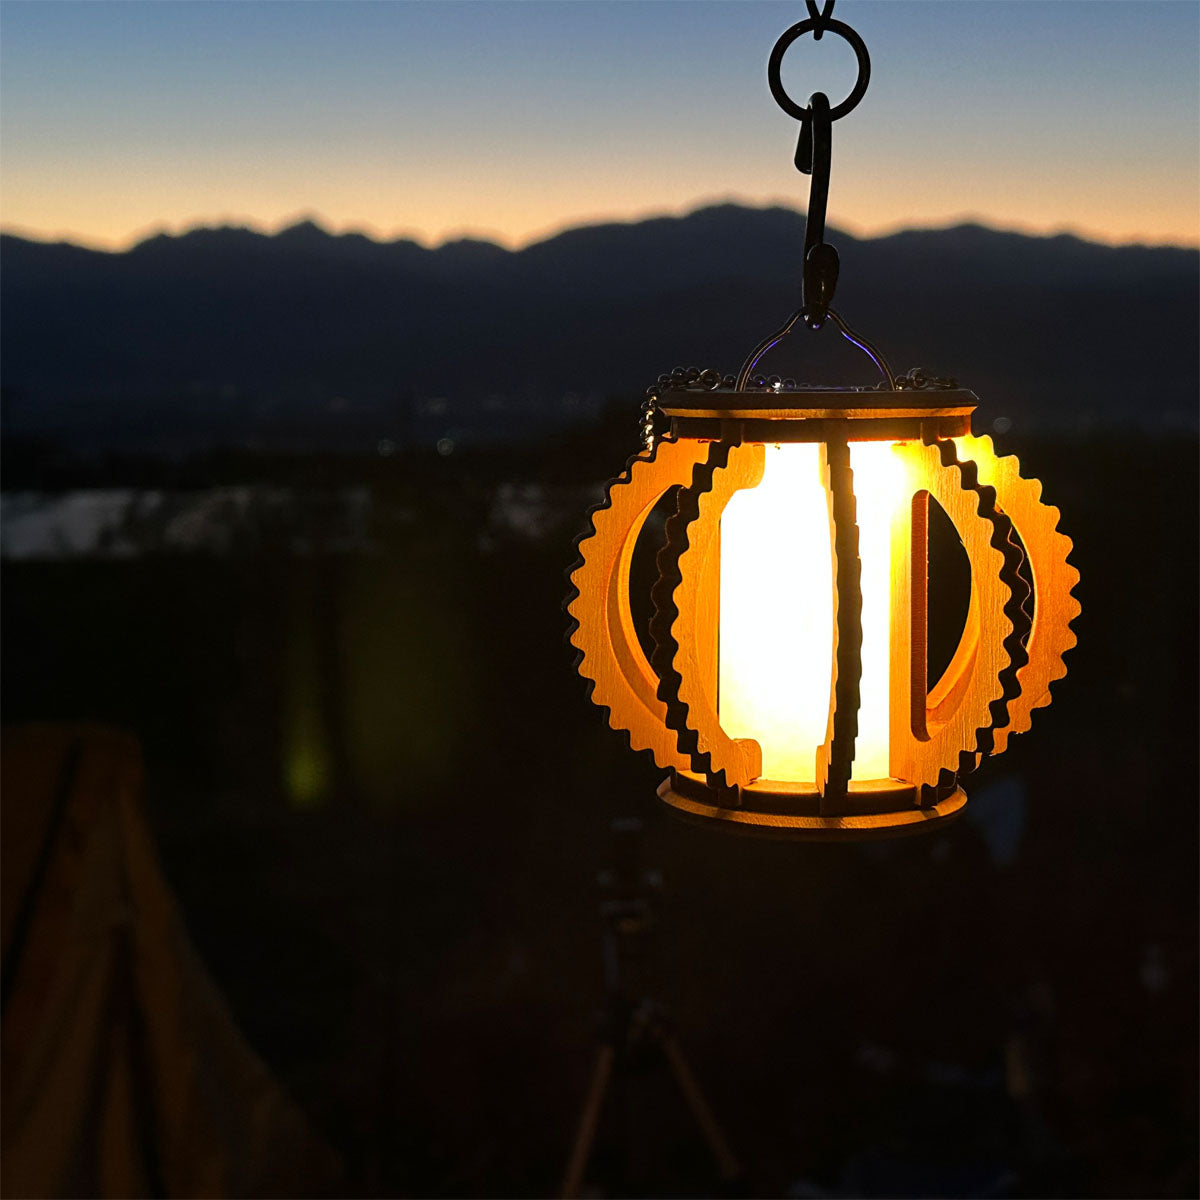 野外やお部屋を照らす癒しの灯り。自然を感じさせる優しいランタンシェード「山の灯」